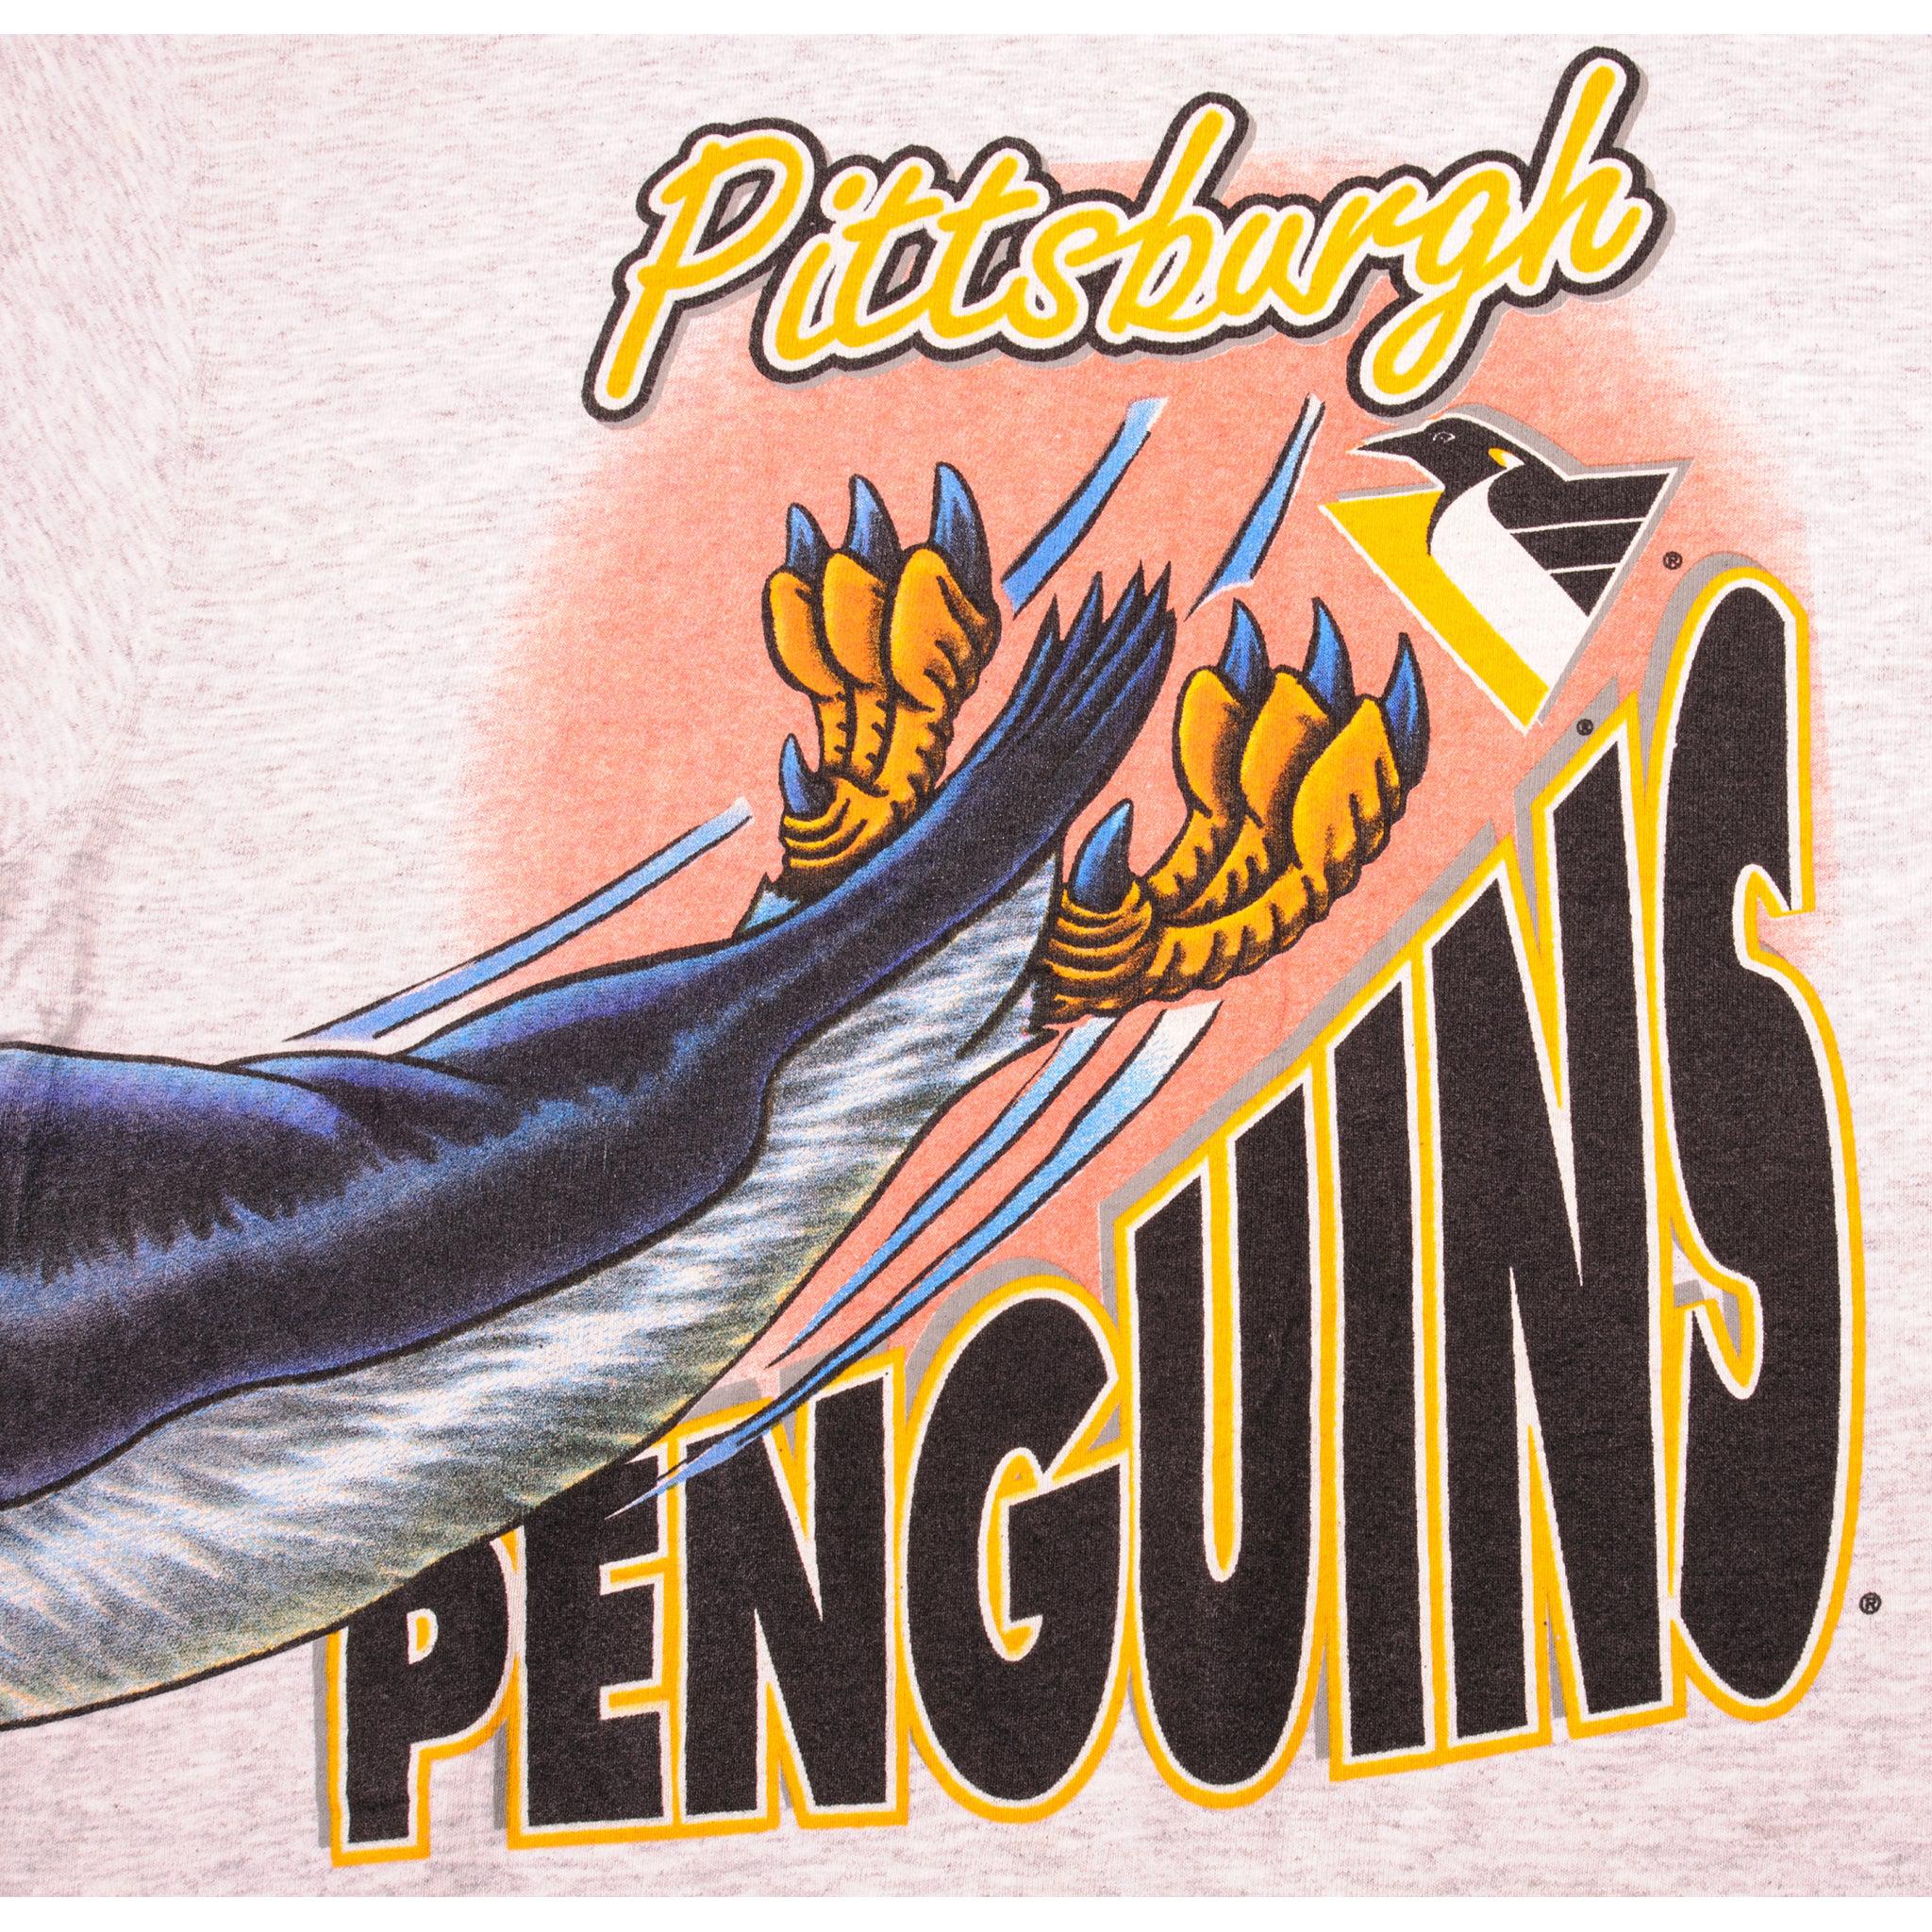 Vintage Pittsburgh Penguins Salem T-shirt Size Large Black Nhl 